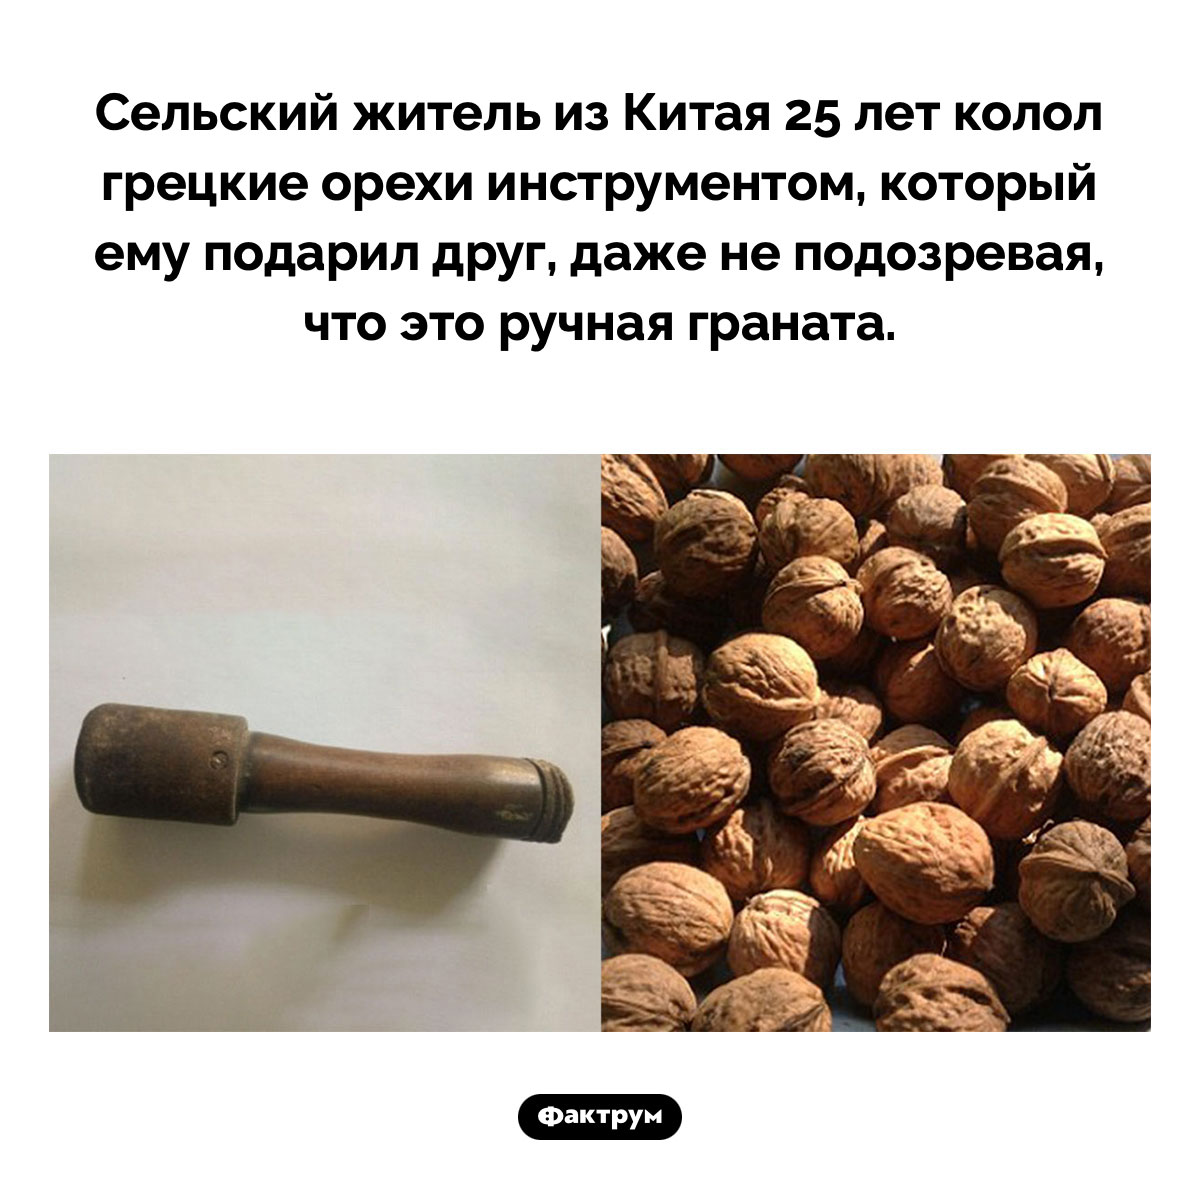 Граната для колки орехов. Сельский житель из Китая 25 лет колол грецкие орехи инструментом, который ему подарил друг, даже не подозревая, что это ручная граната.